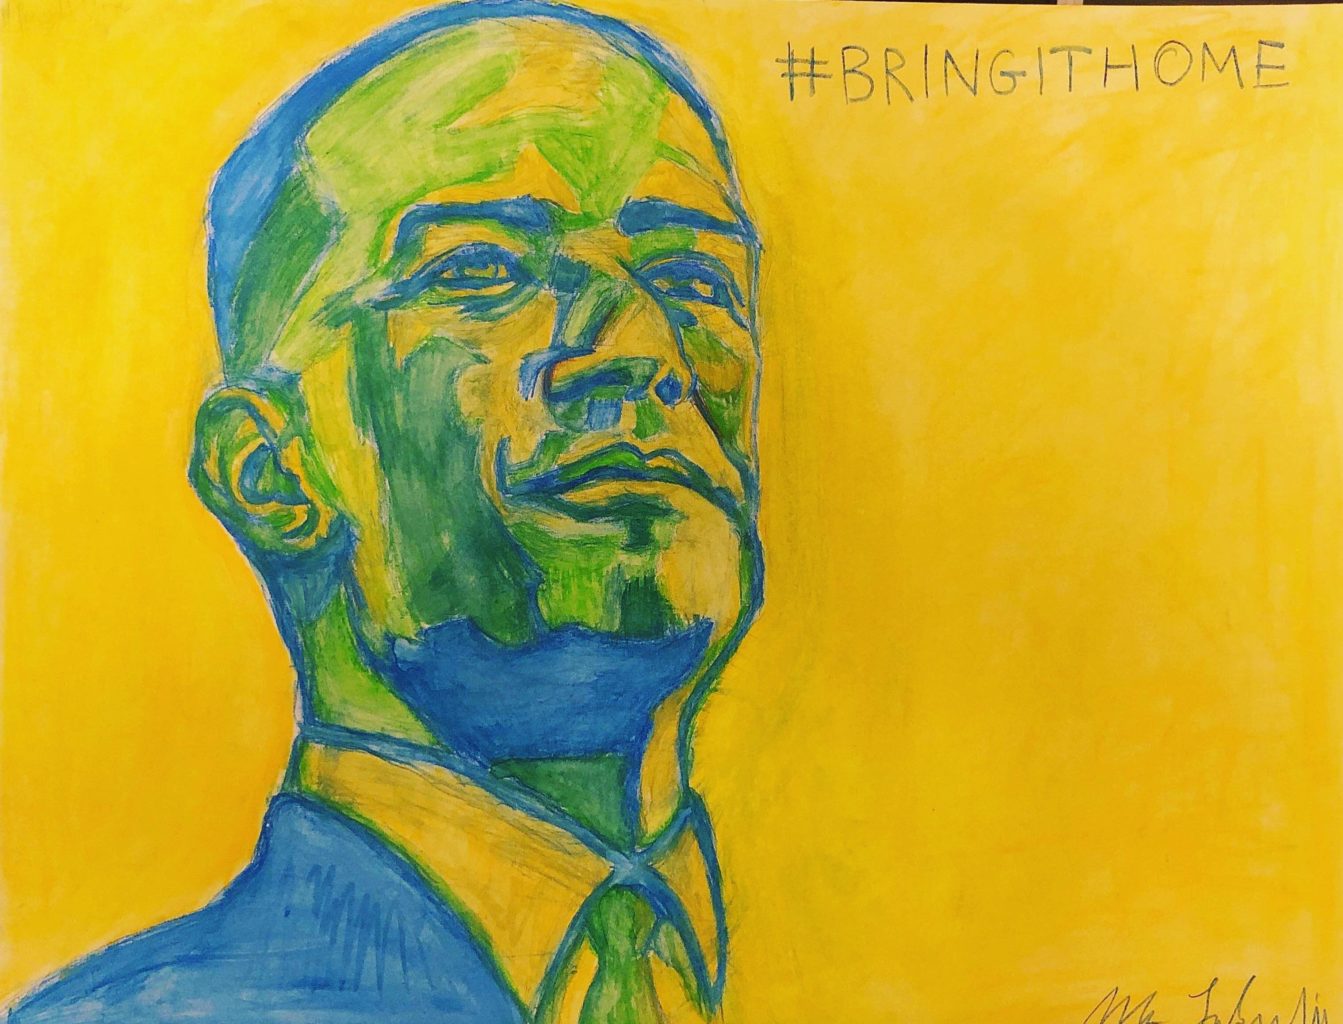 Surrebral #BringItHome Andrew Gillum painting